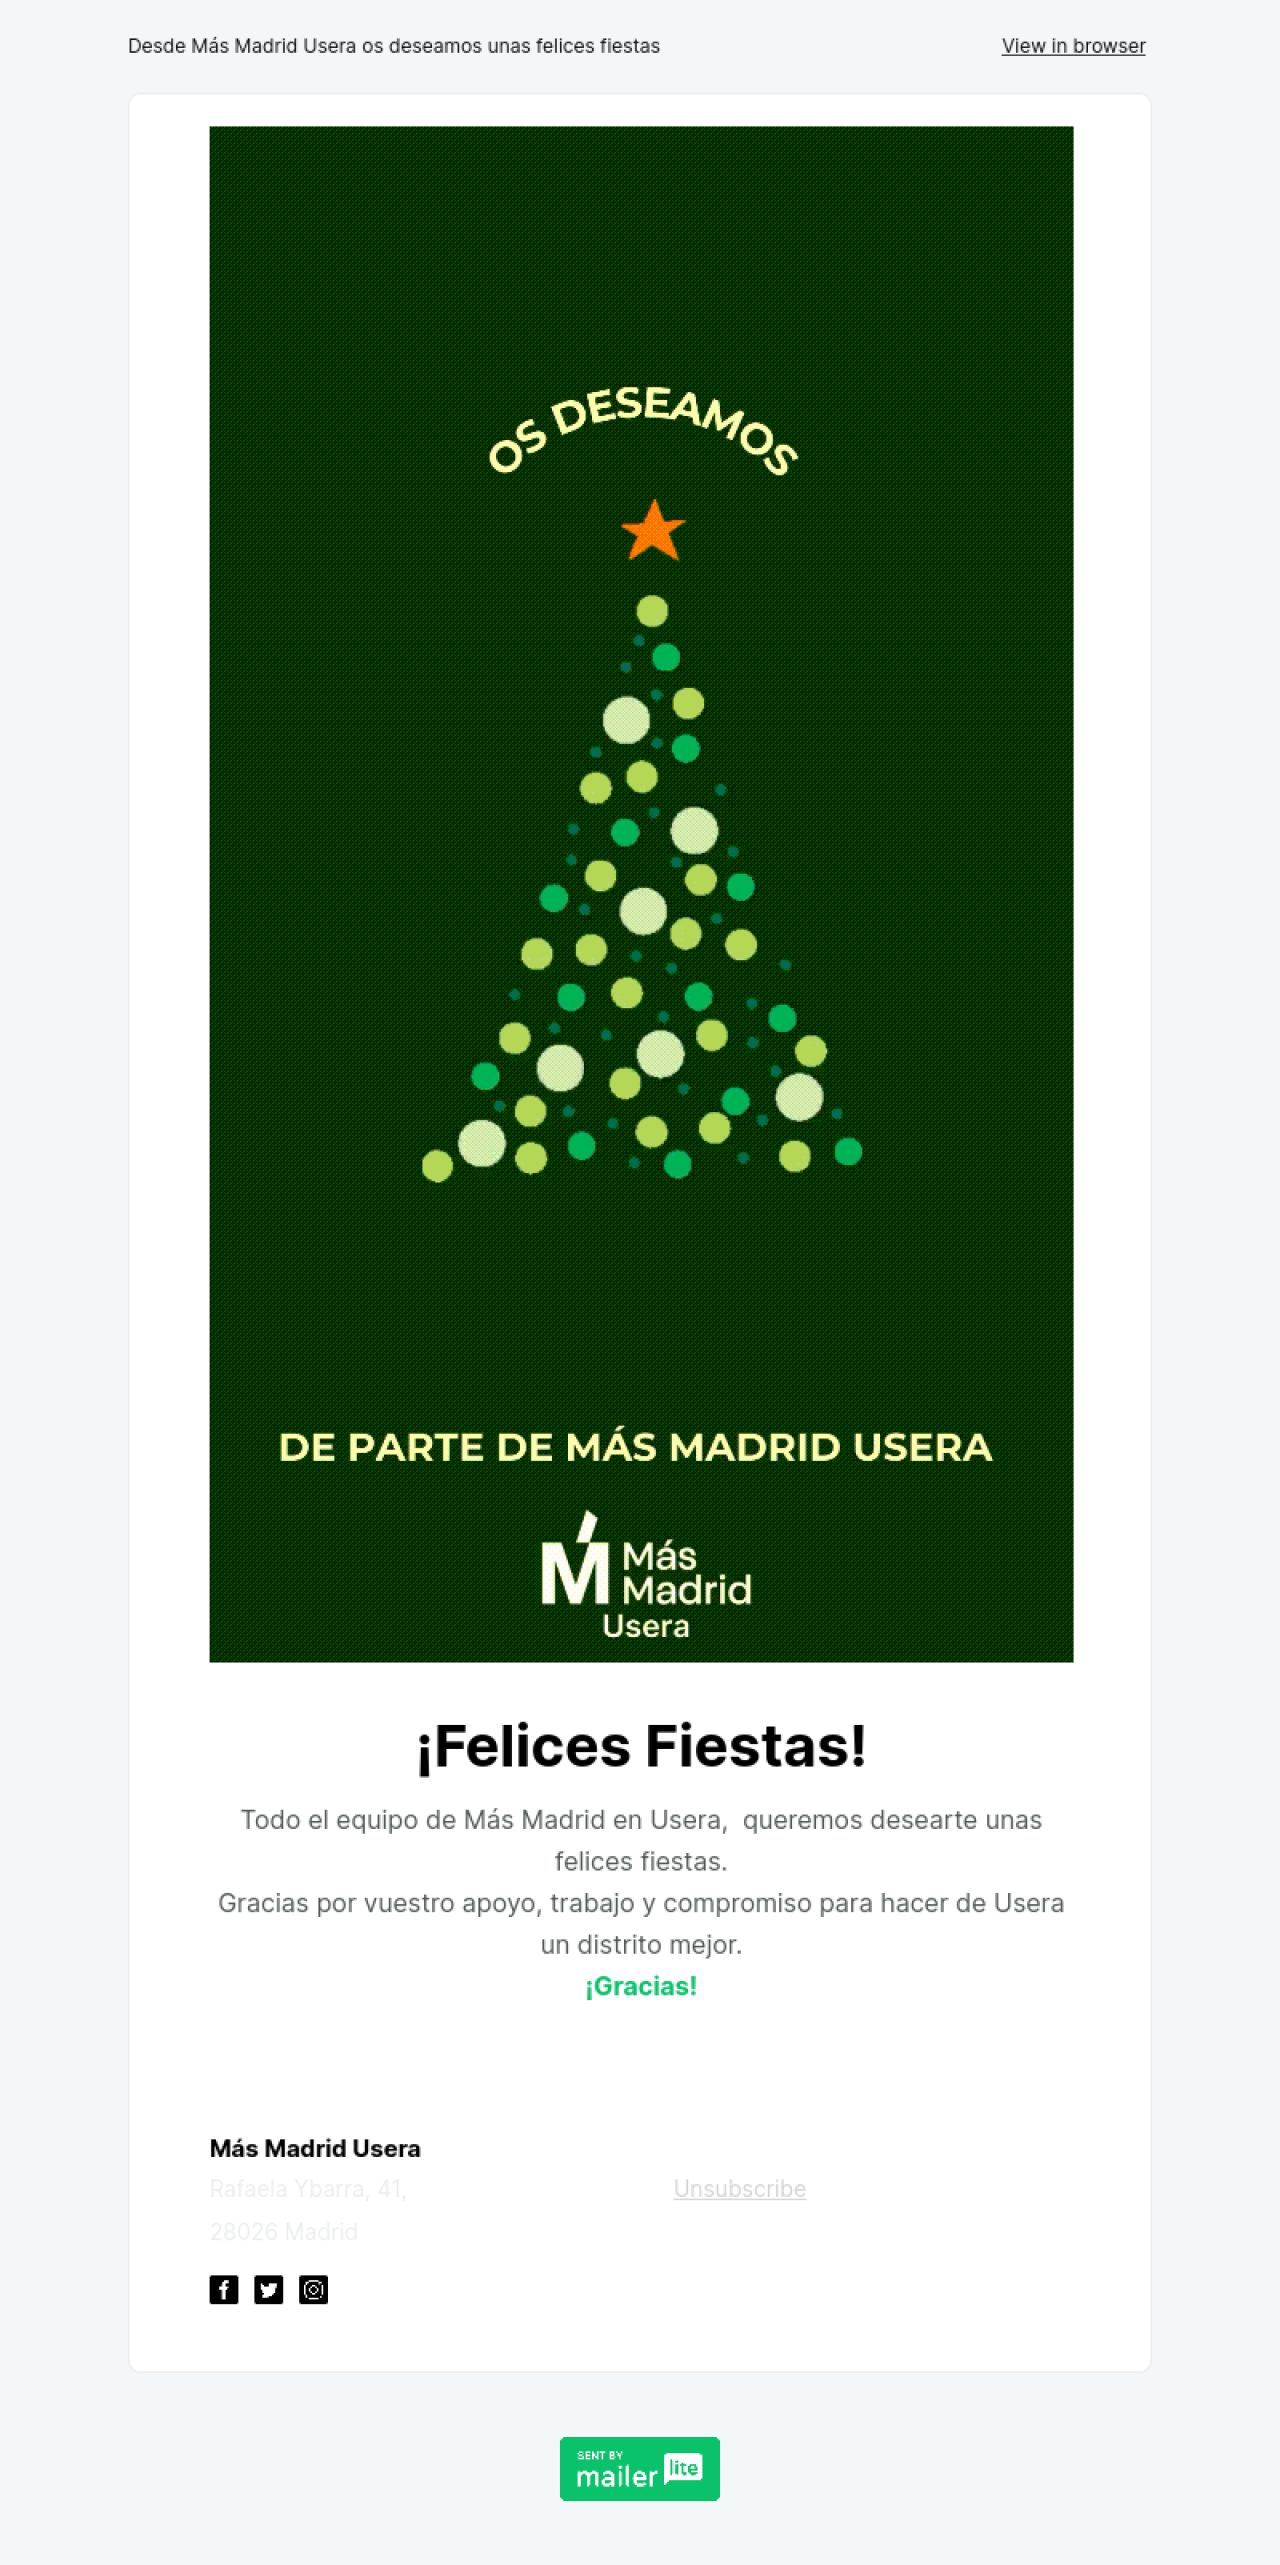 Más Madrid Usera ejemplo - Diseño de MailerLite